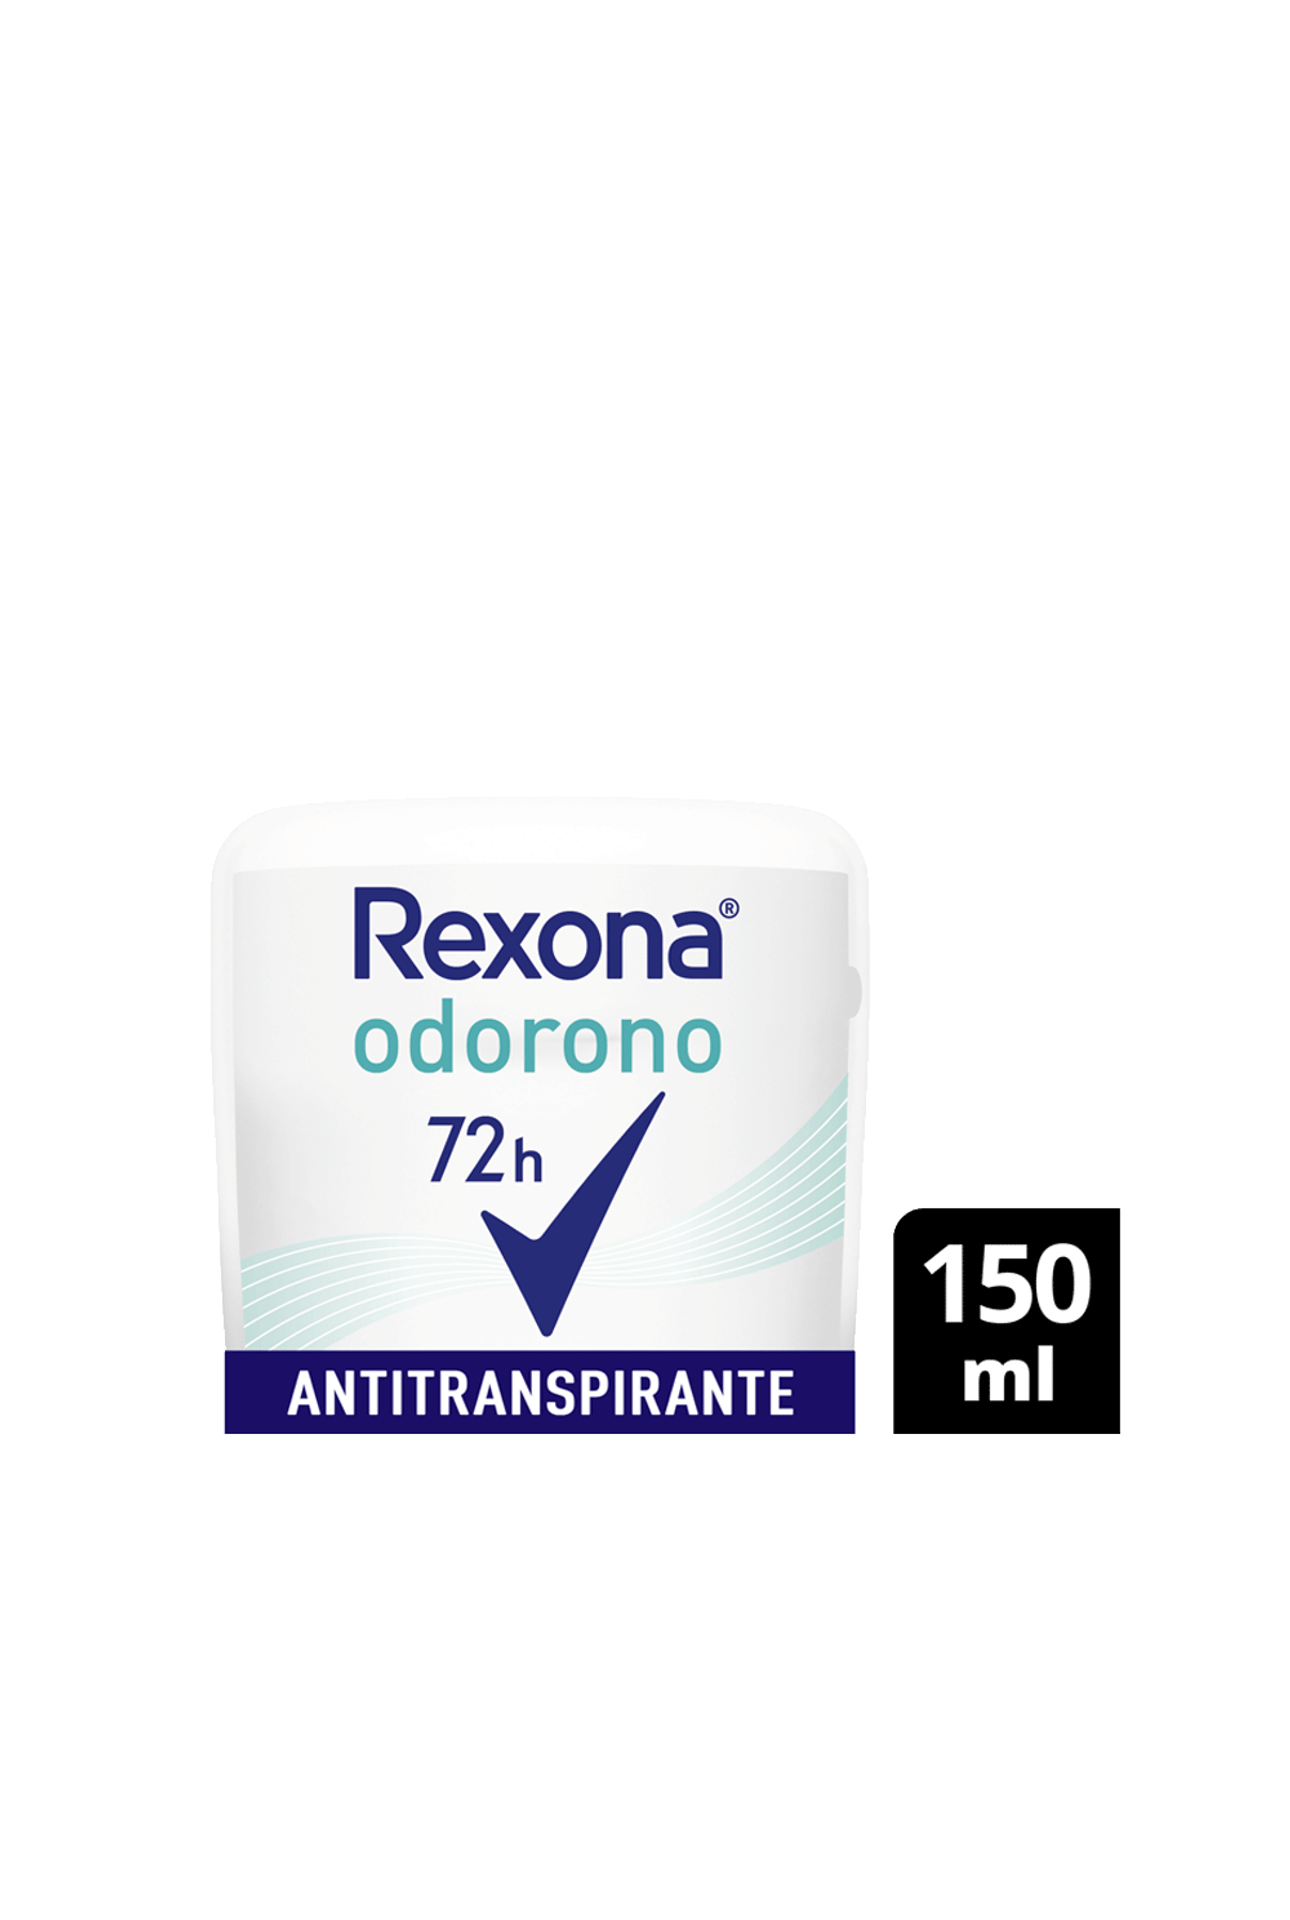 Rexona-Antitranspirante-En-Crema-Odorono-x-60gr-0000077987983_img1